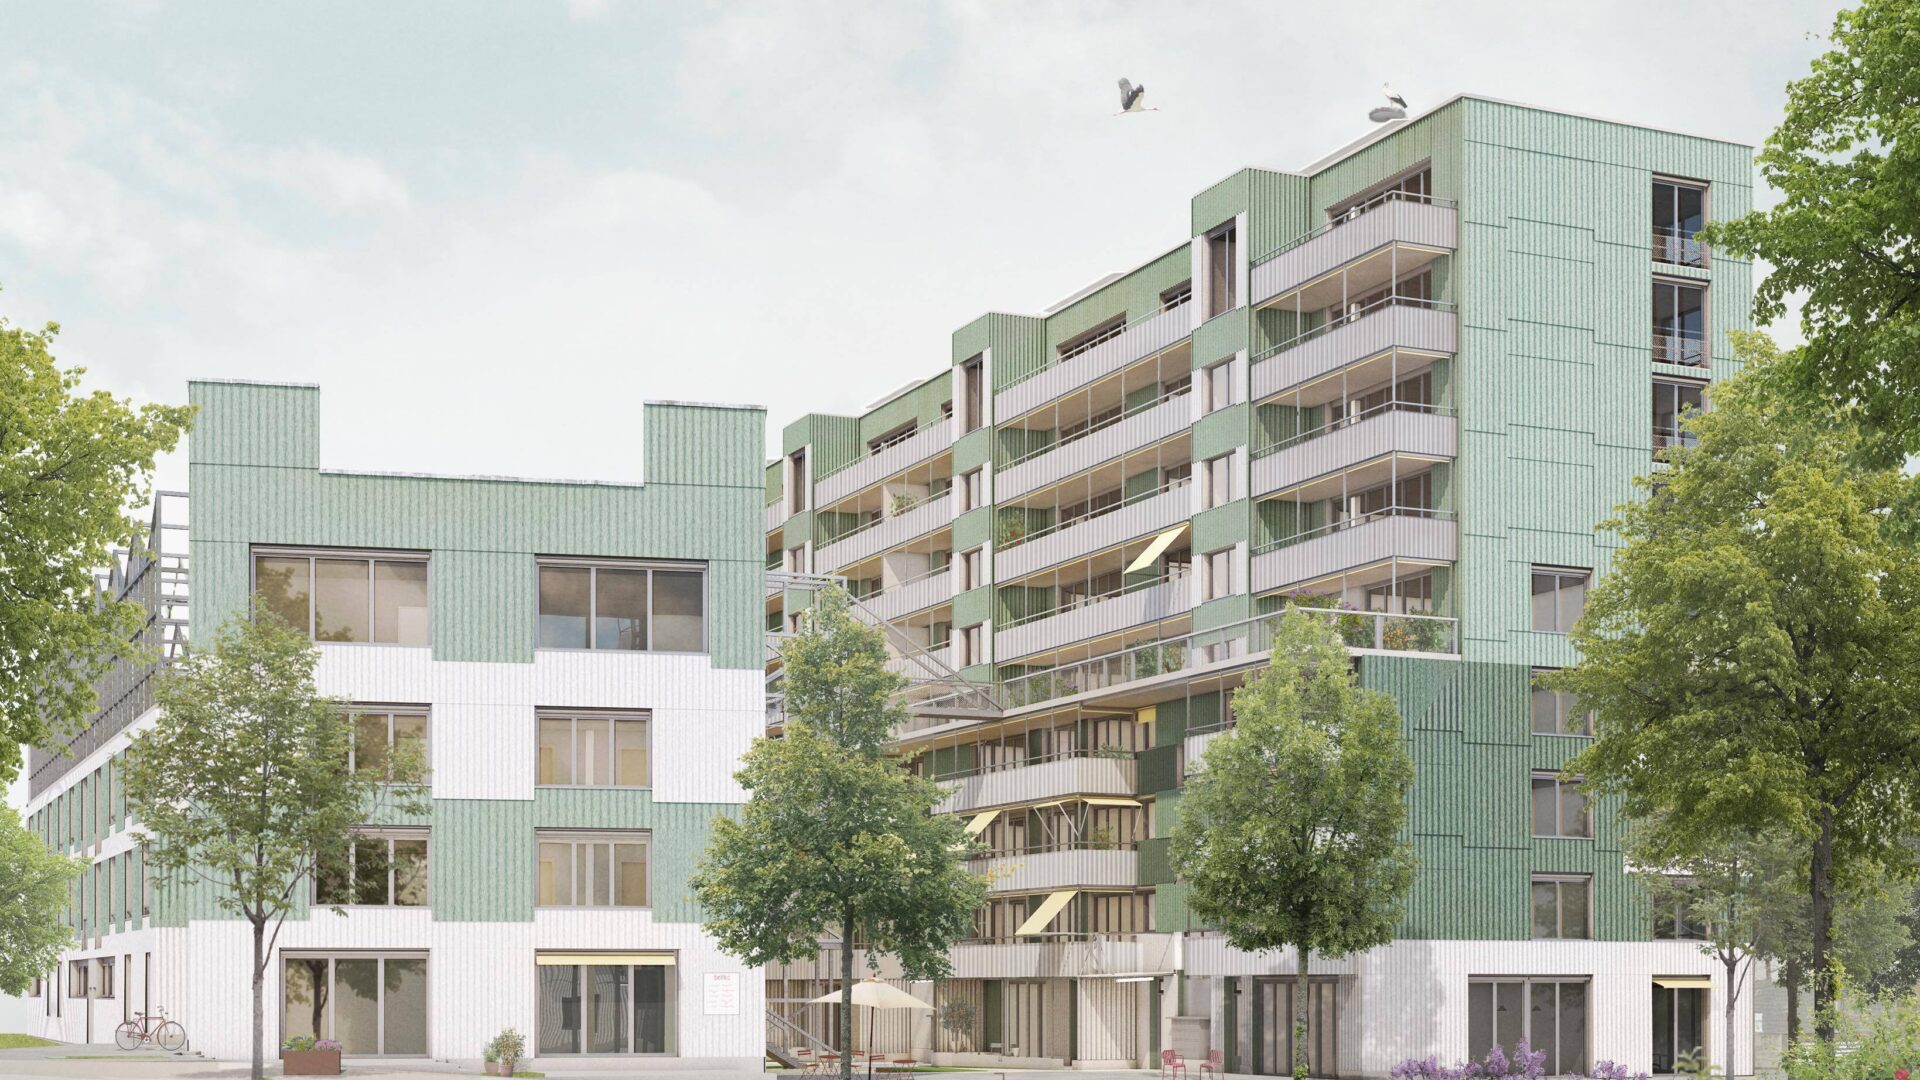 Bild von Westhof Projekt an Zukunftstrasse 3-17 in Dübendorf